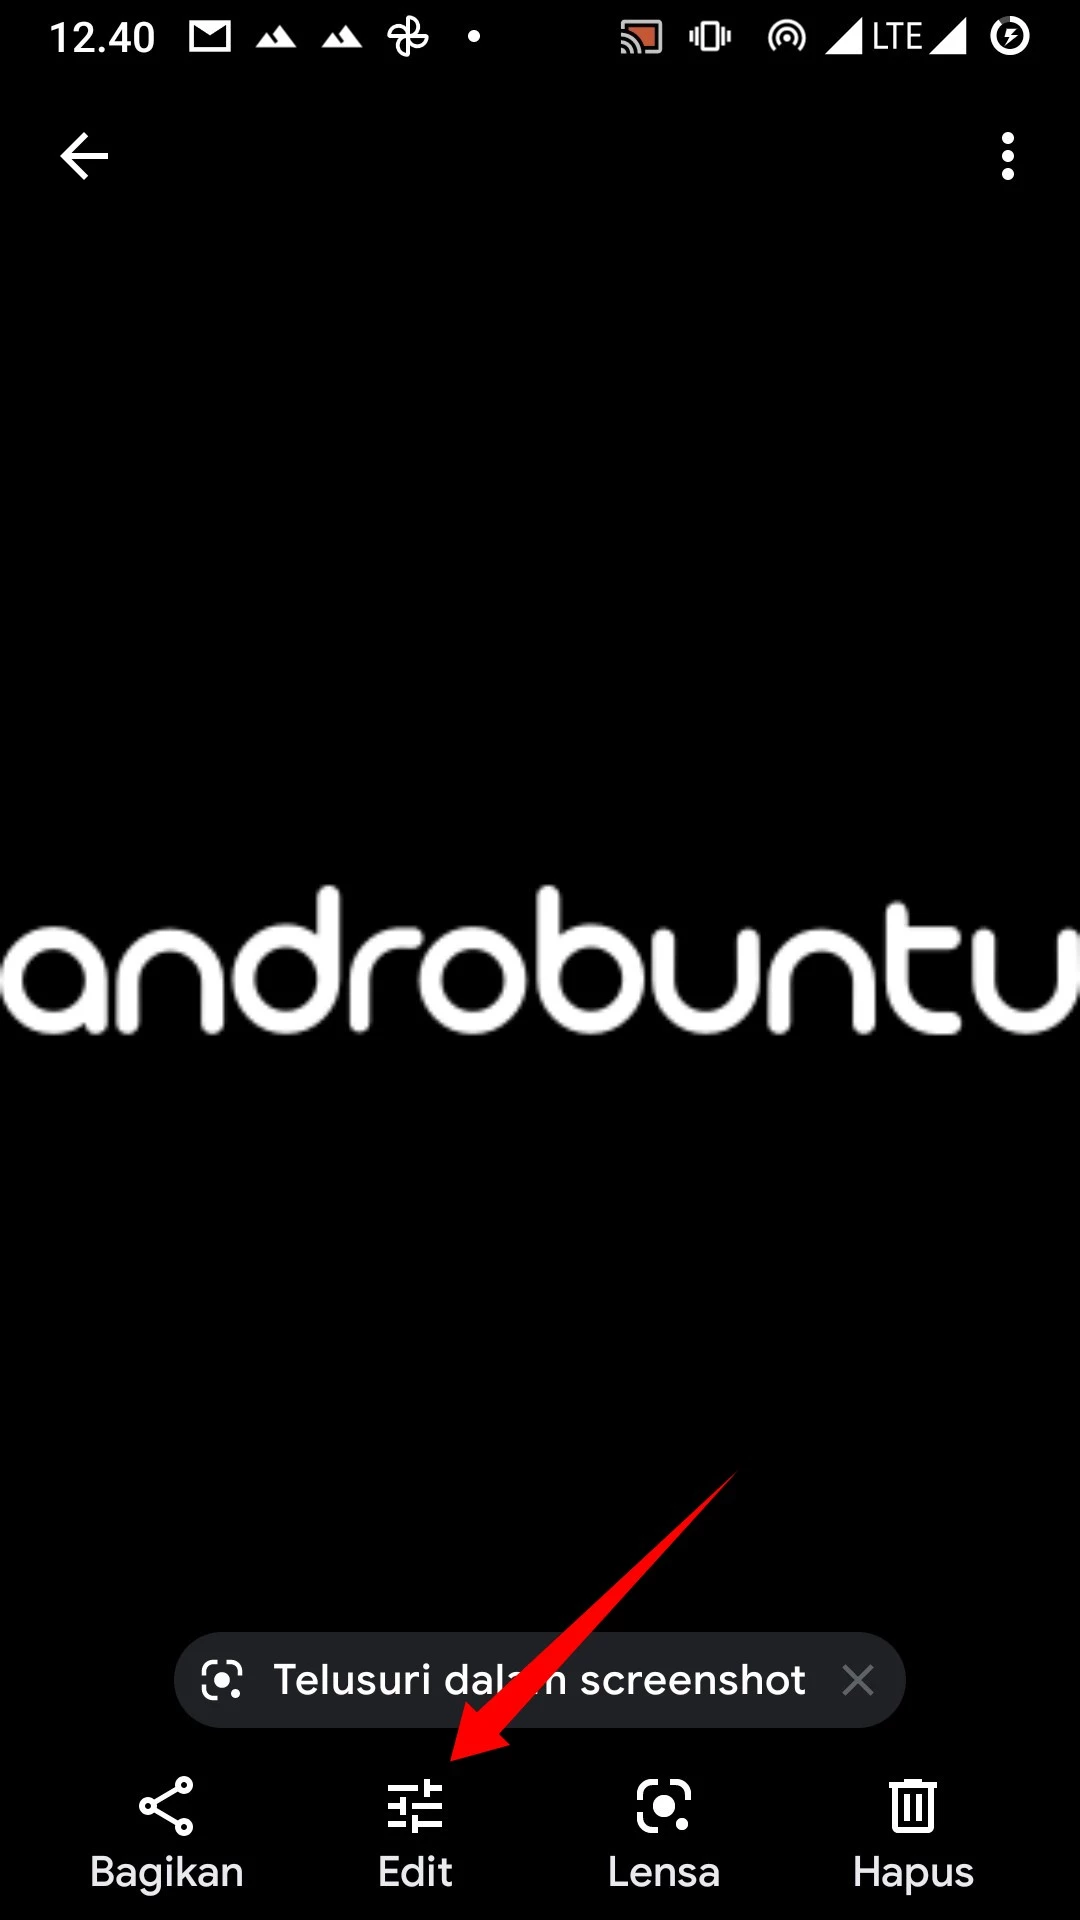 Cara Memutar Foto di Android by Androbuntu 3